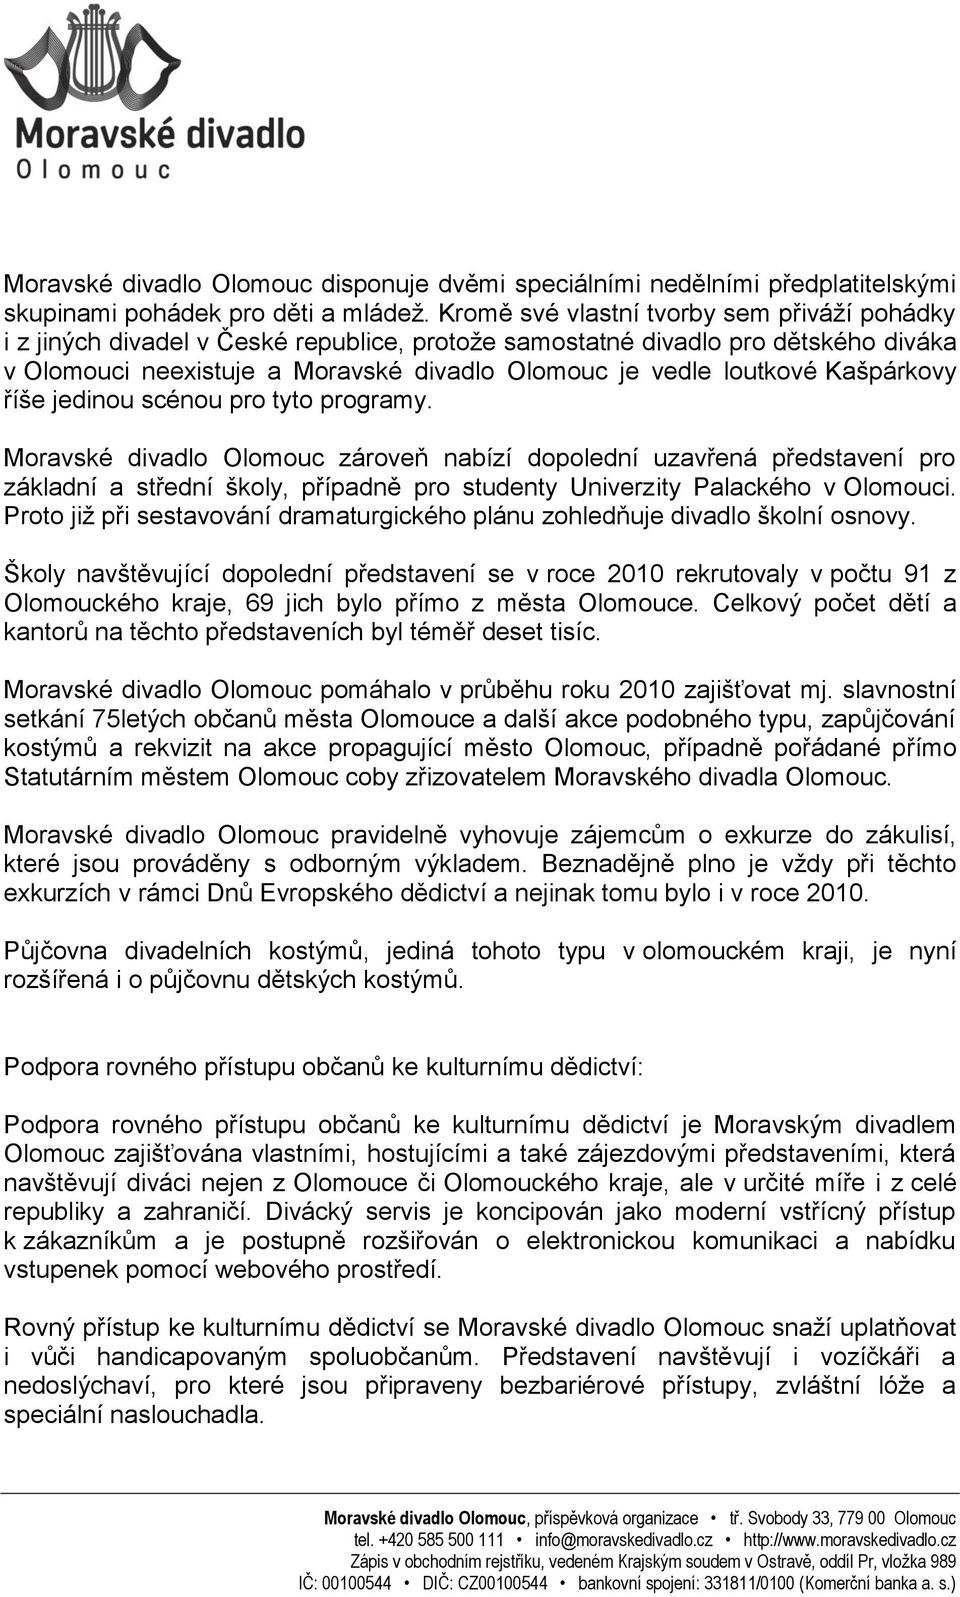 Výroční zpráva o činnosti příspěvkové organizace Moravské divadlo Olomouc.  za rok Moravské divadlo Olomouc, příspěvková organizace - PDF Free Download